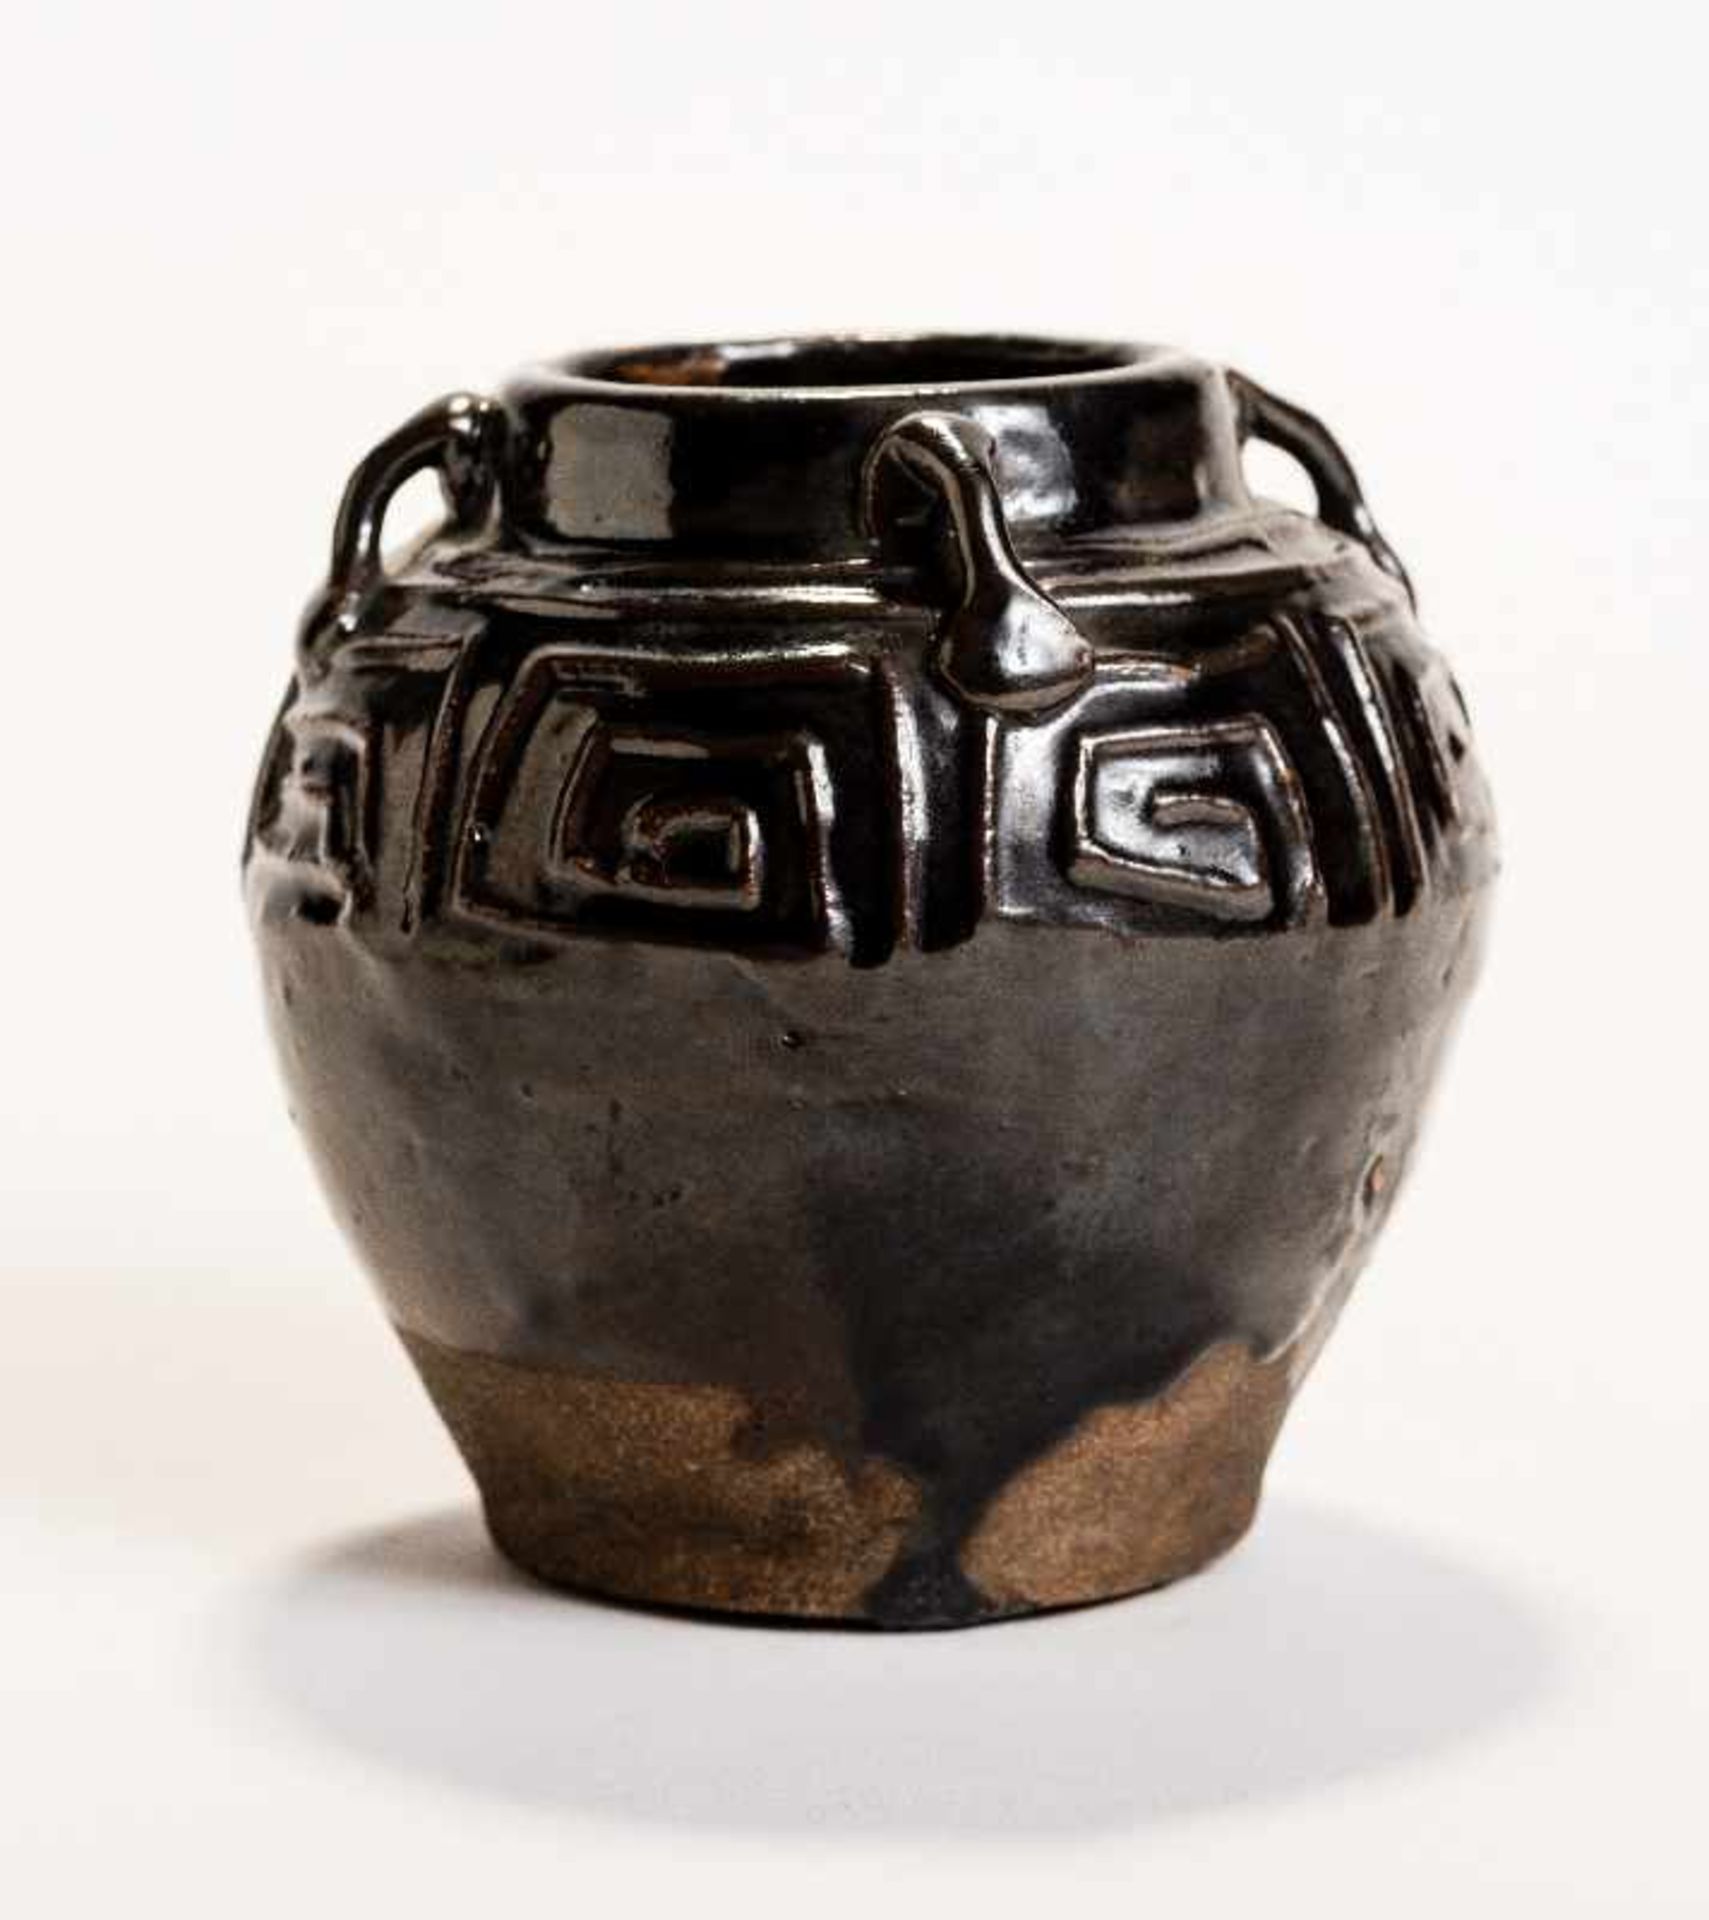 TÖPFCHEN MIT LEIWEN-MÄANDERGlasierte Keramik. China, Qing-Dynastie bis Republik Bauchige Form